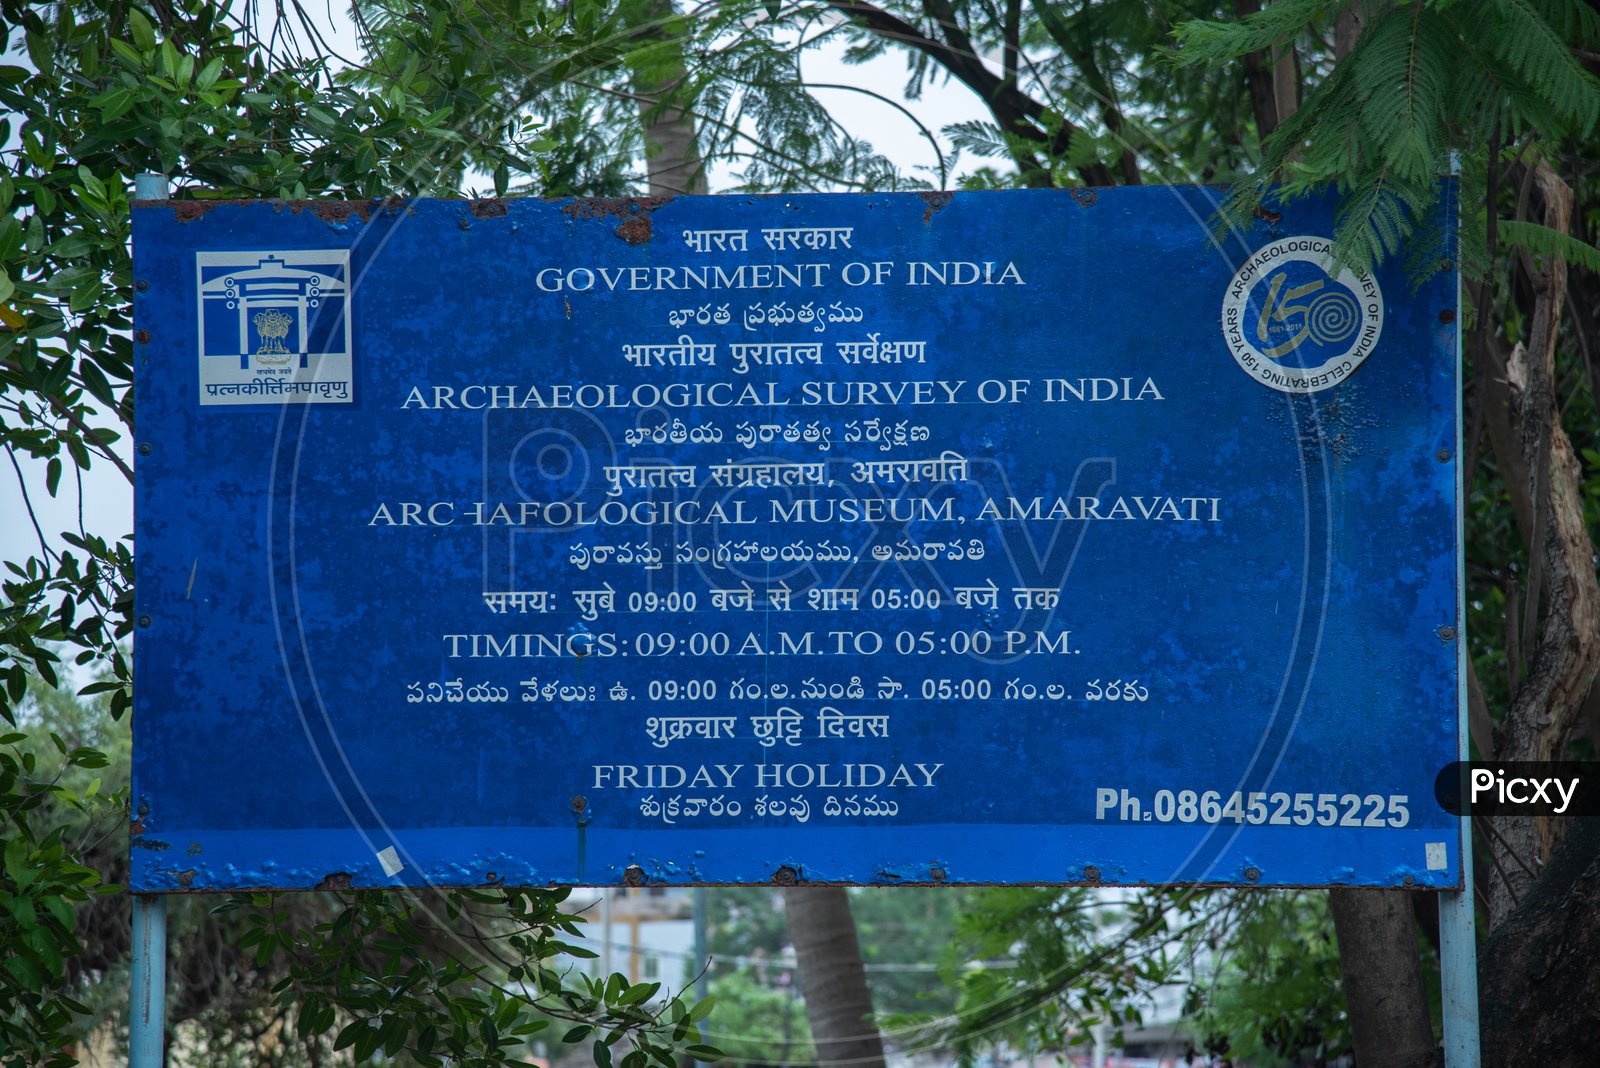 Archeological Survey of India Musuem, Amaravati